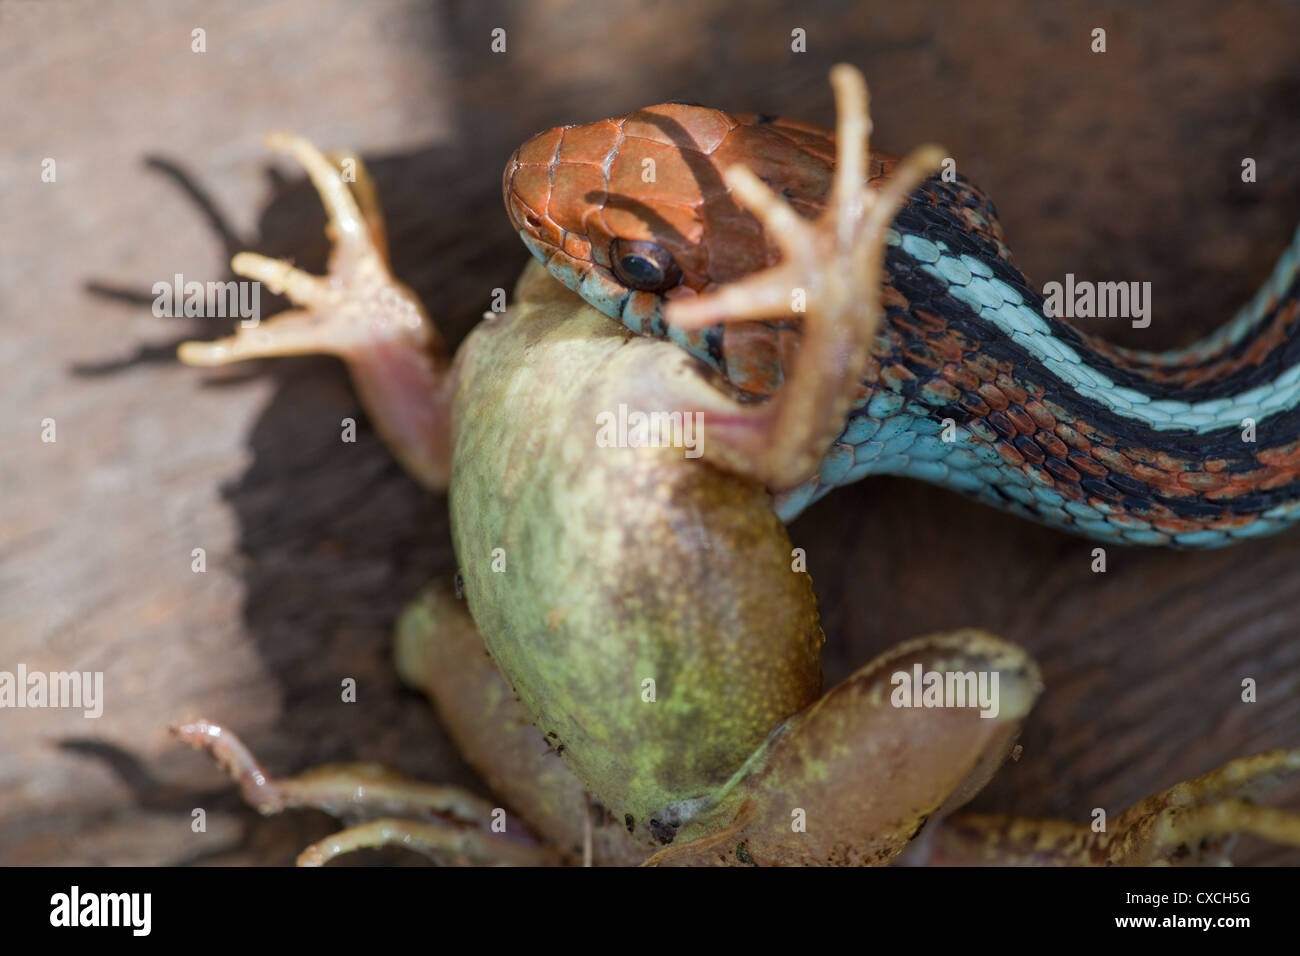 San Francisco Garter Snake (Thamnophis Sirtalis Tetrataenia). Rund um einen Frosch (Rana SP.), ausgehend von der Kopfseite einnehmen. Stockfoto